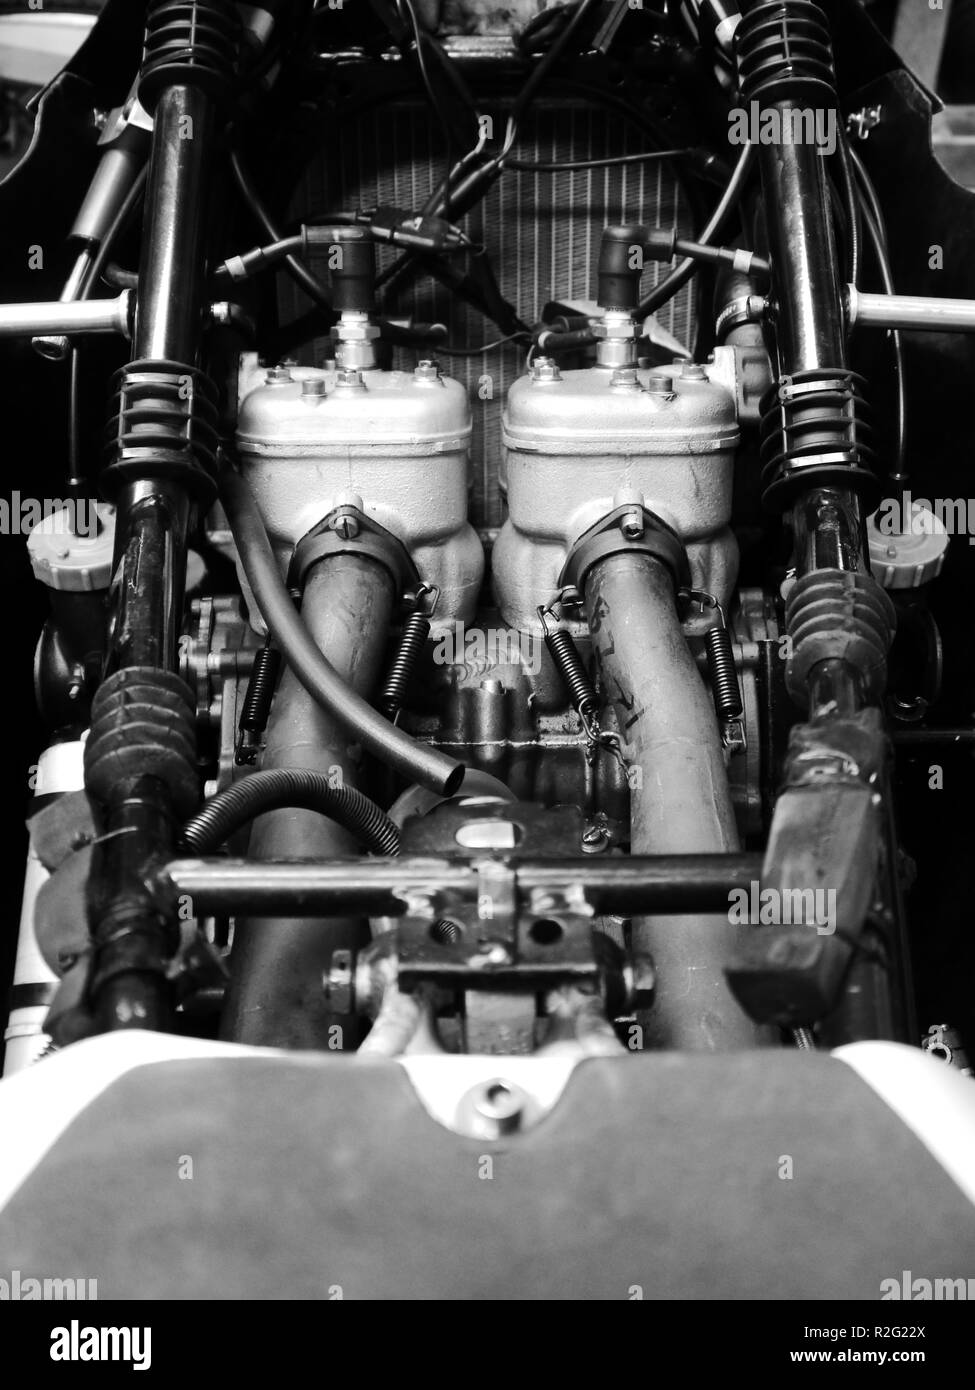 Sedile e carburatori su 1982 Suzuki RG500 MK7 moto di produzione.. Cavalcato da Gary Lingham. Vincitore anche al 2012 CRMC 500cc GP,Sean Emmett. Foto Stock